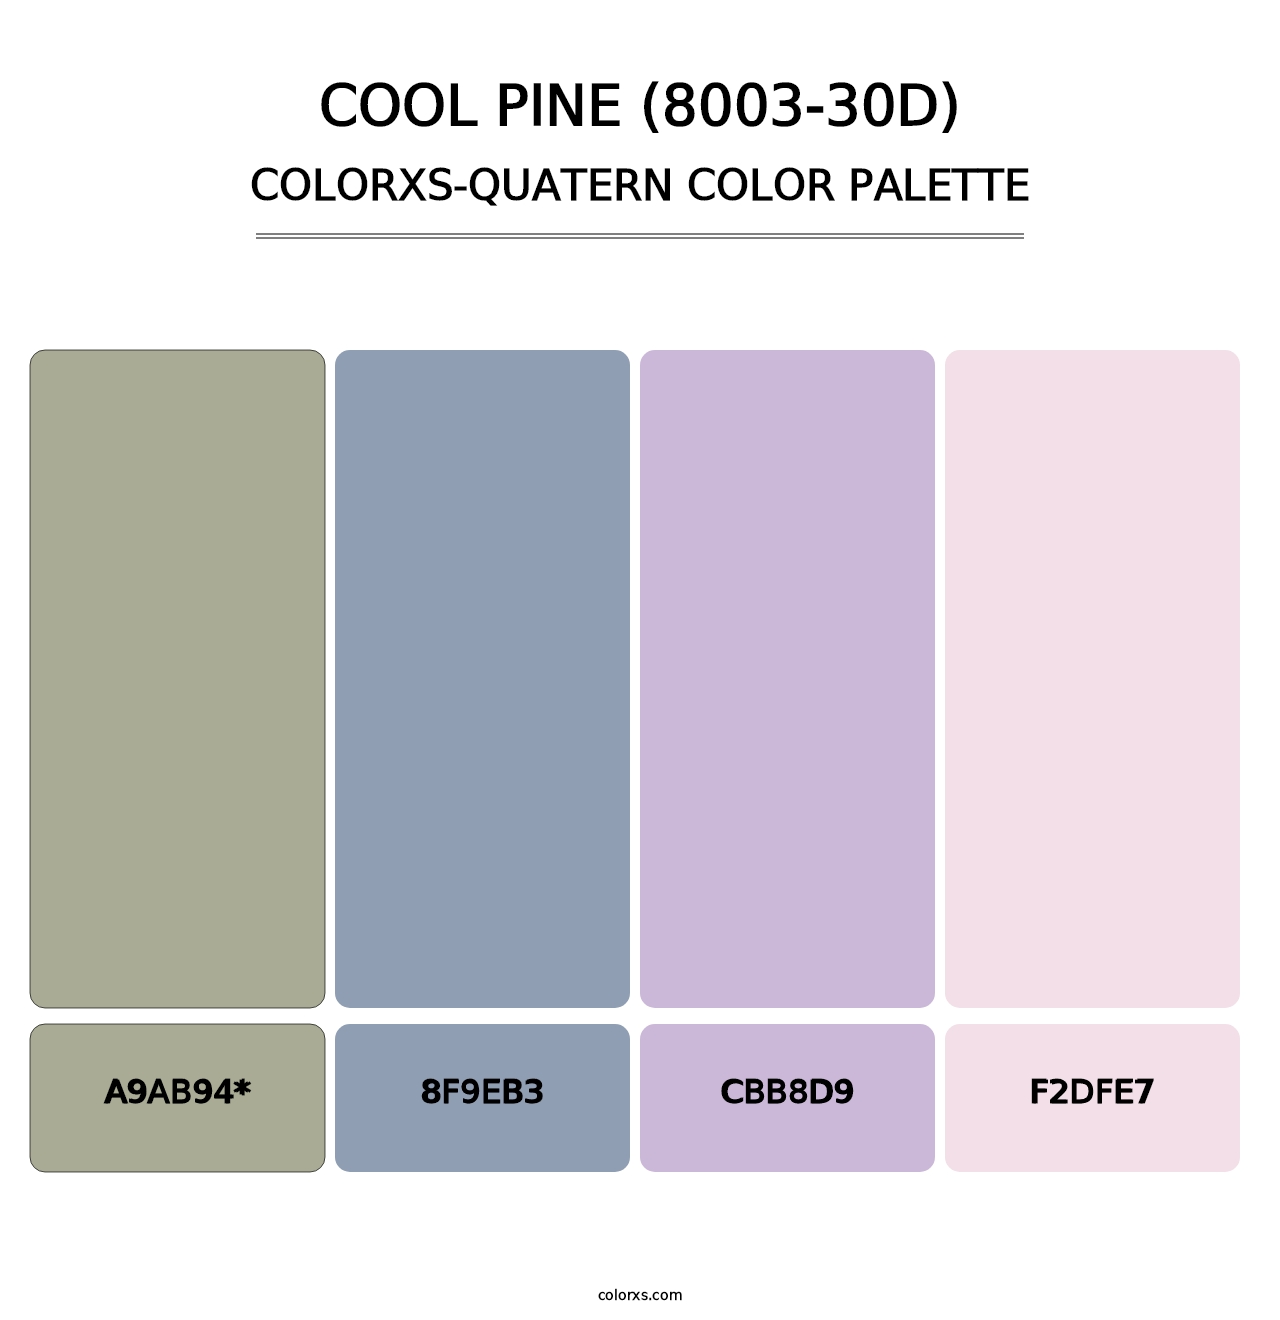 Cool Pine (8003-30D) - Colorxs Quatern Palette